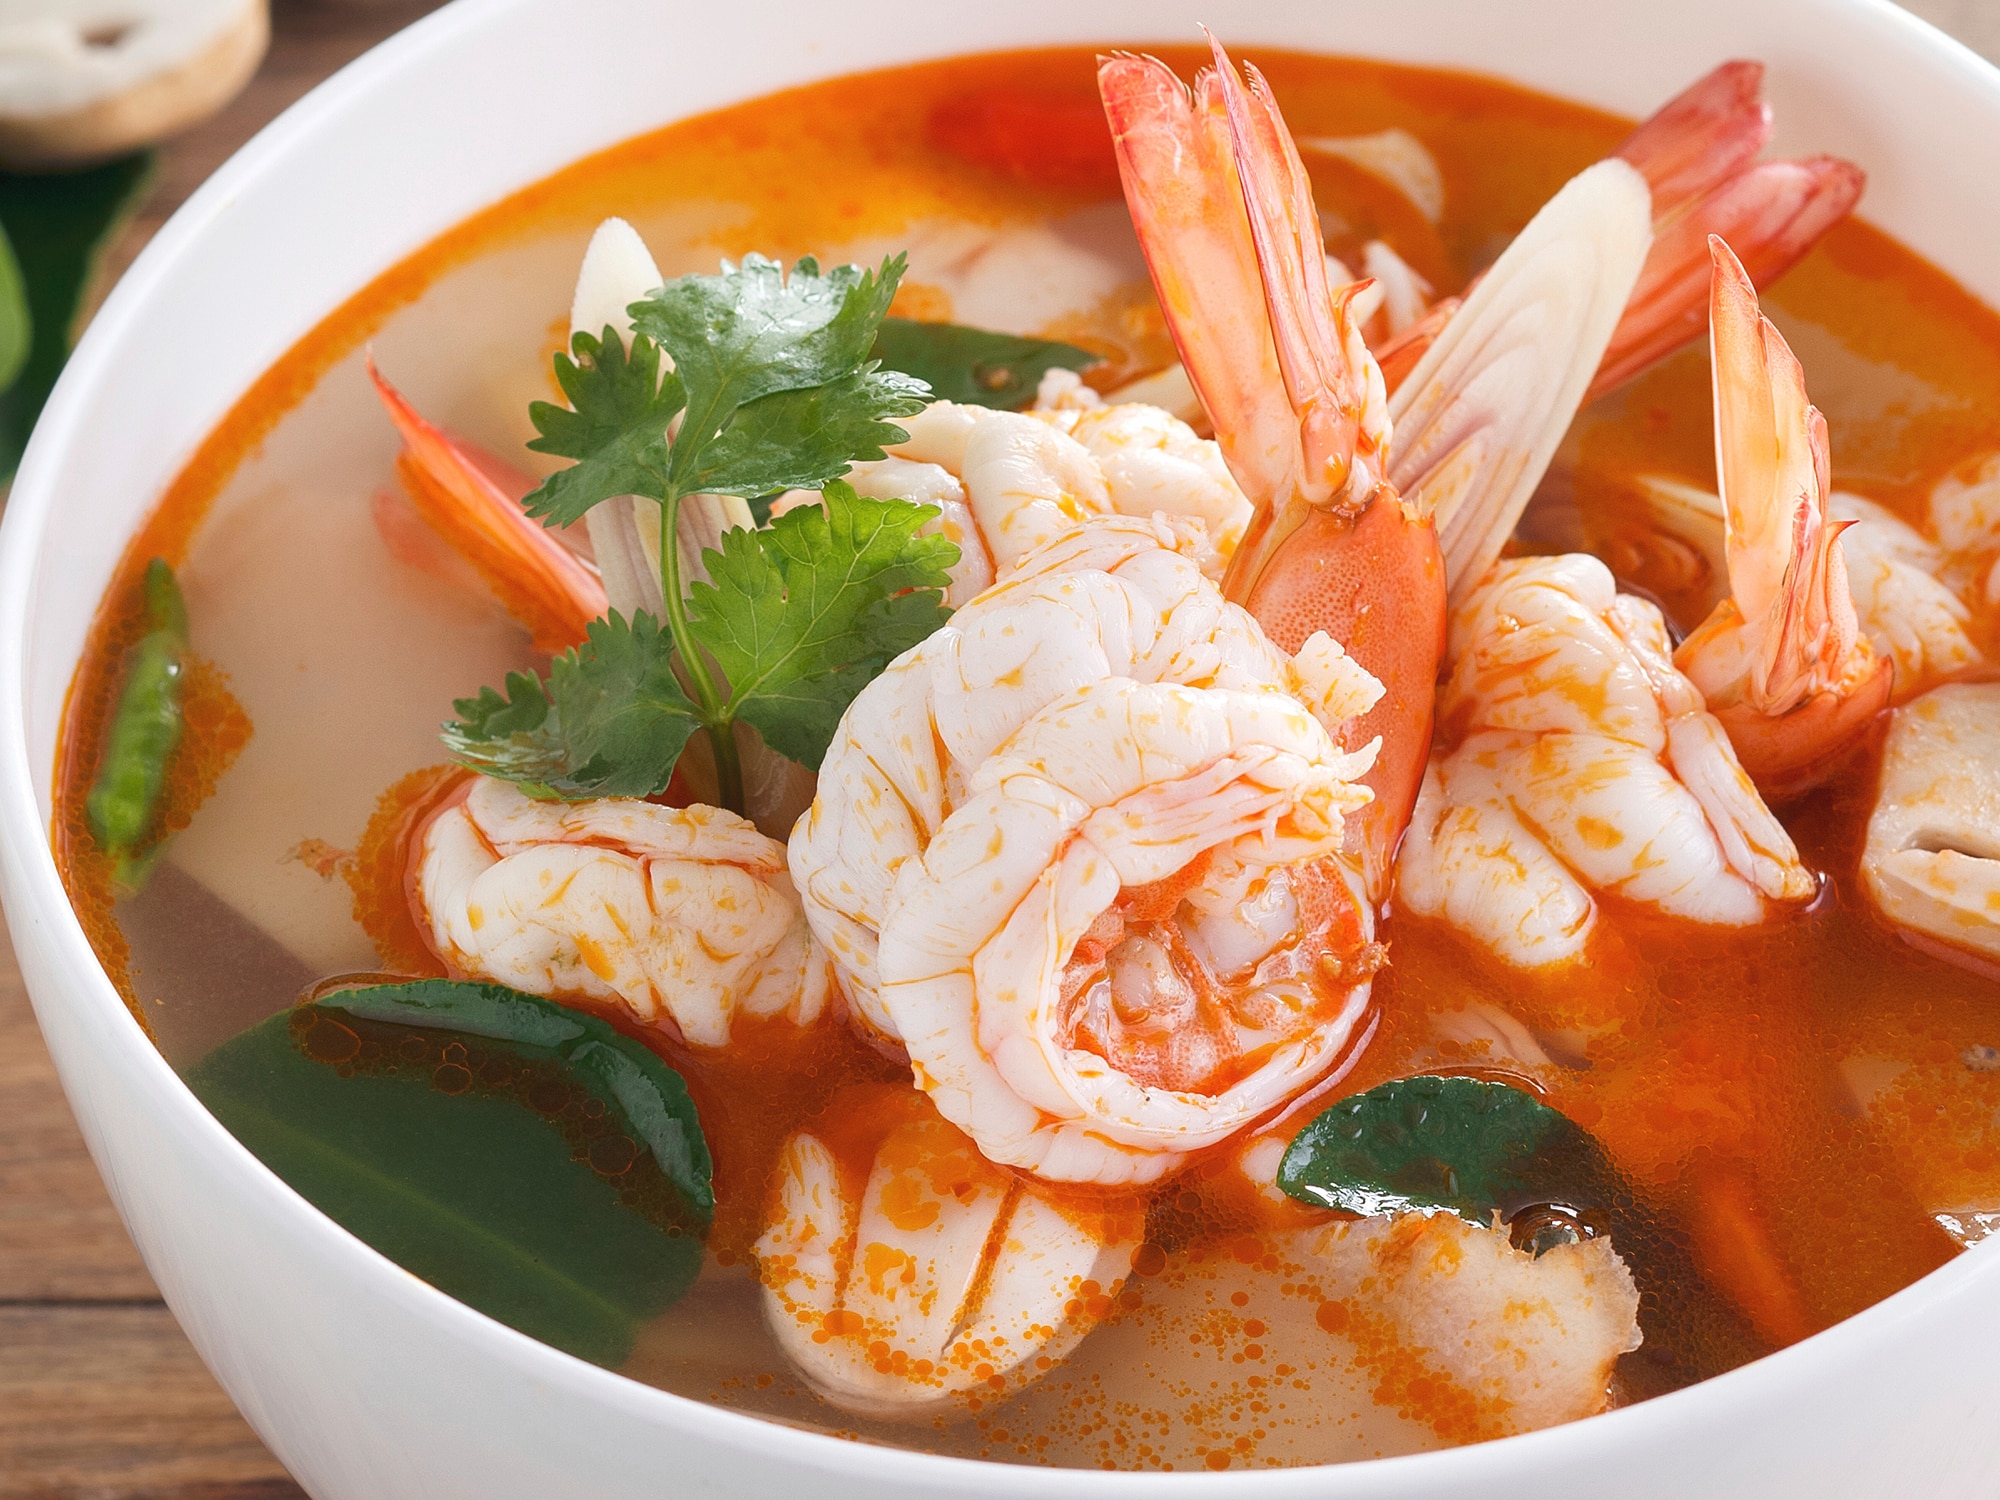 Delicious Thai recipes